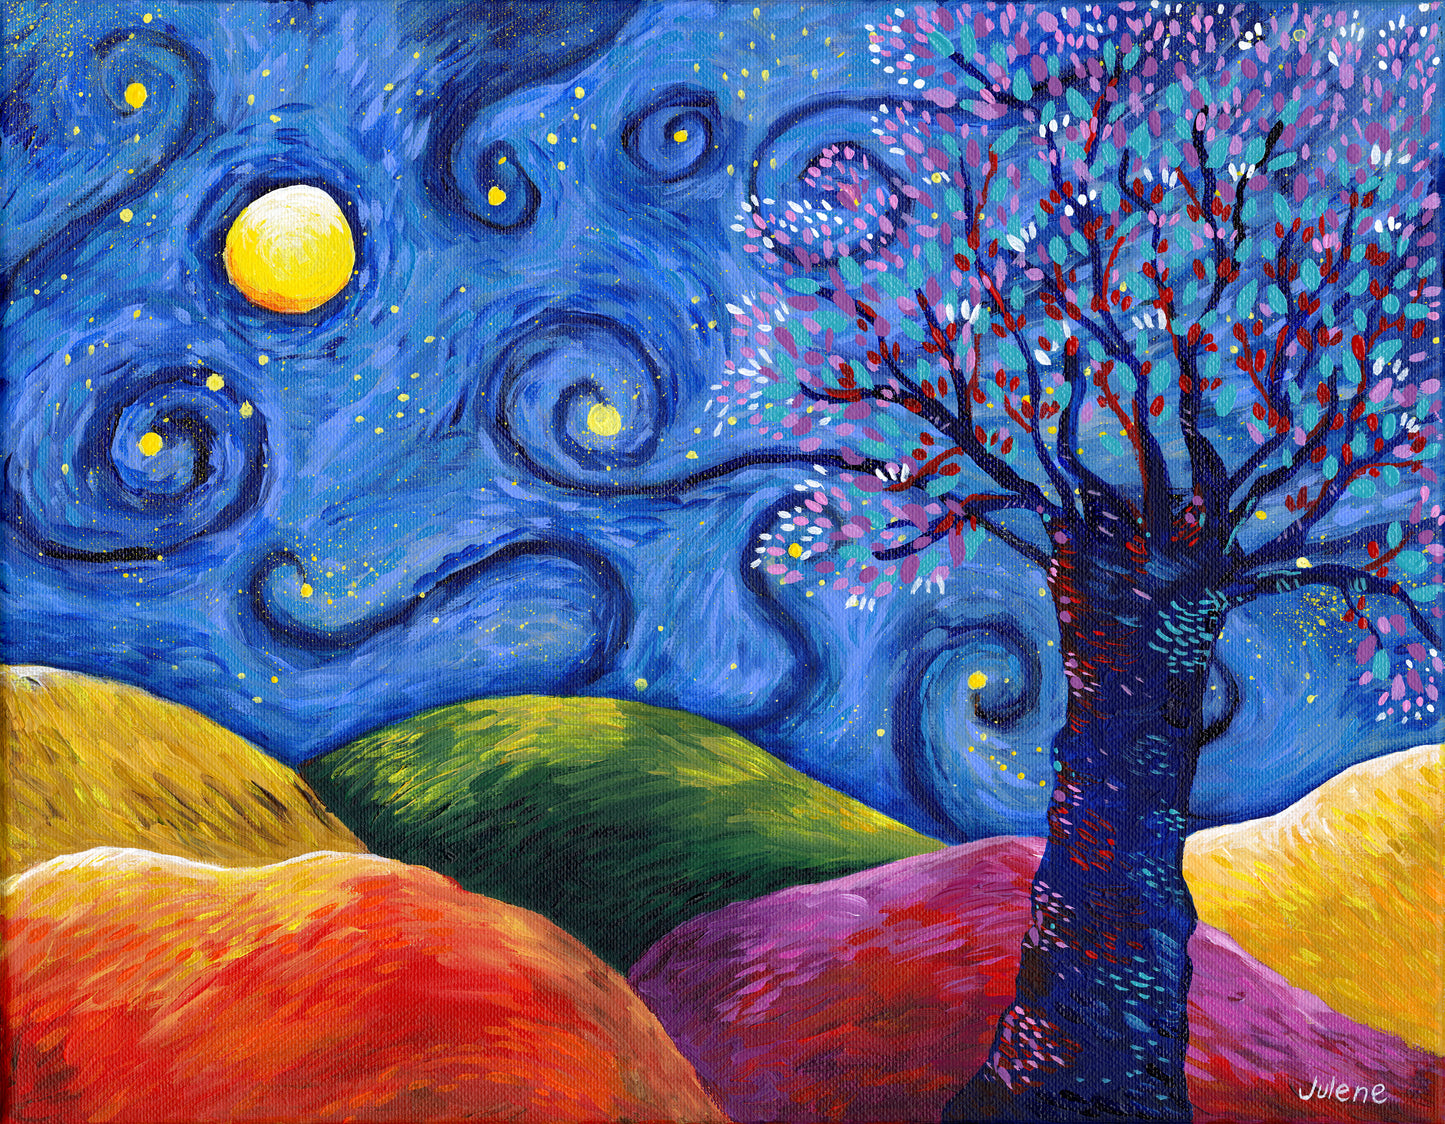 Moonlit Nocturne - original painting